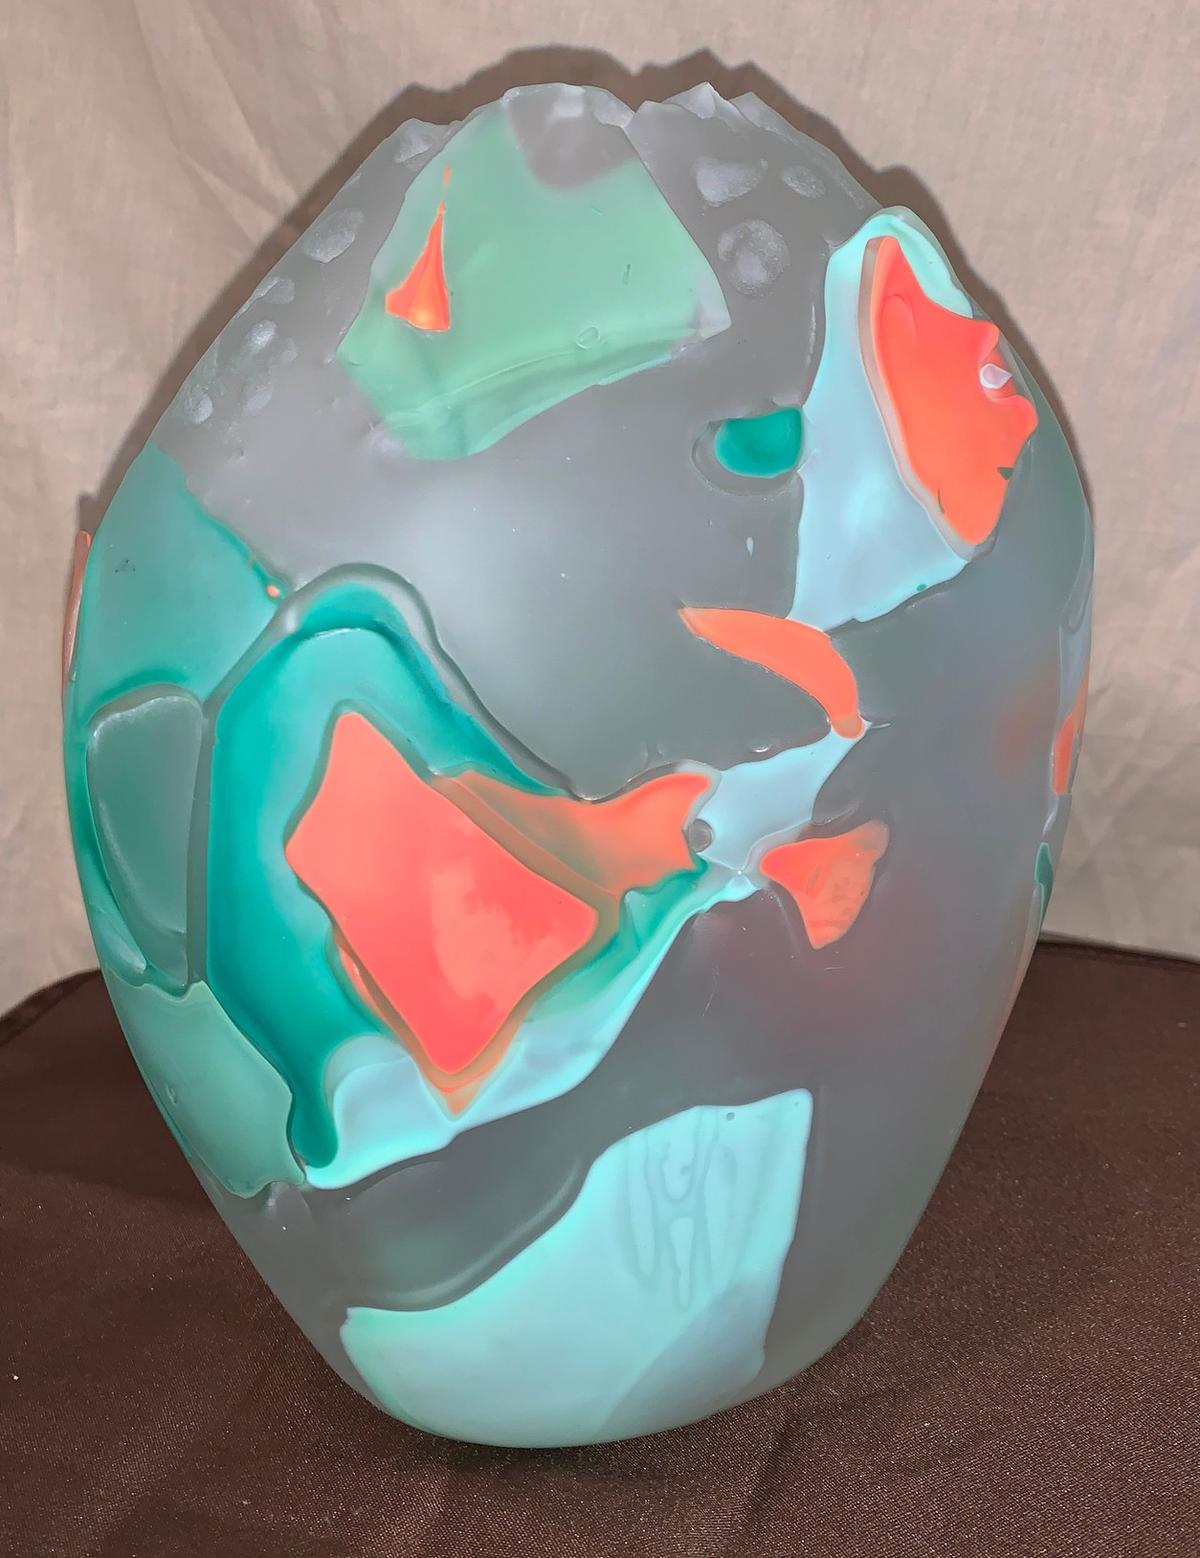 11"H x 5"W Very Unique Translucent Vase with Raised Relief Geometric Design